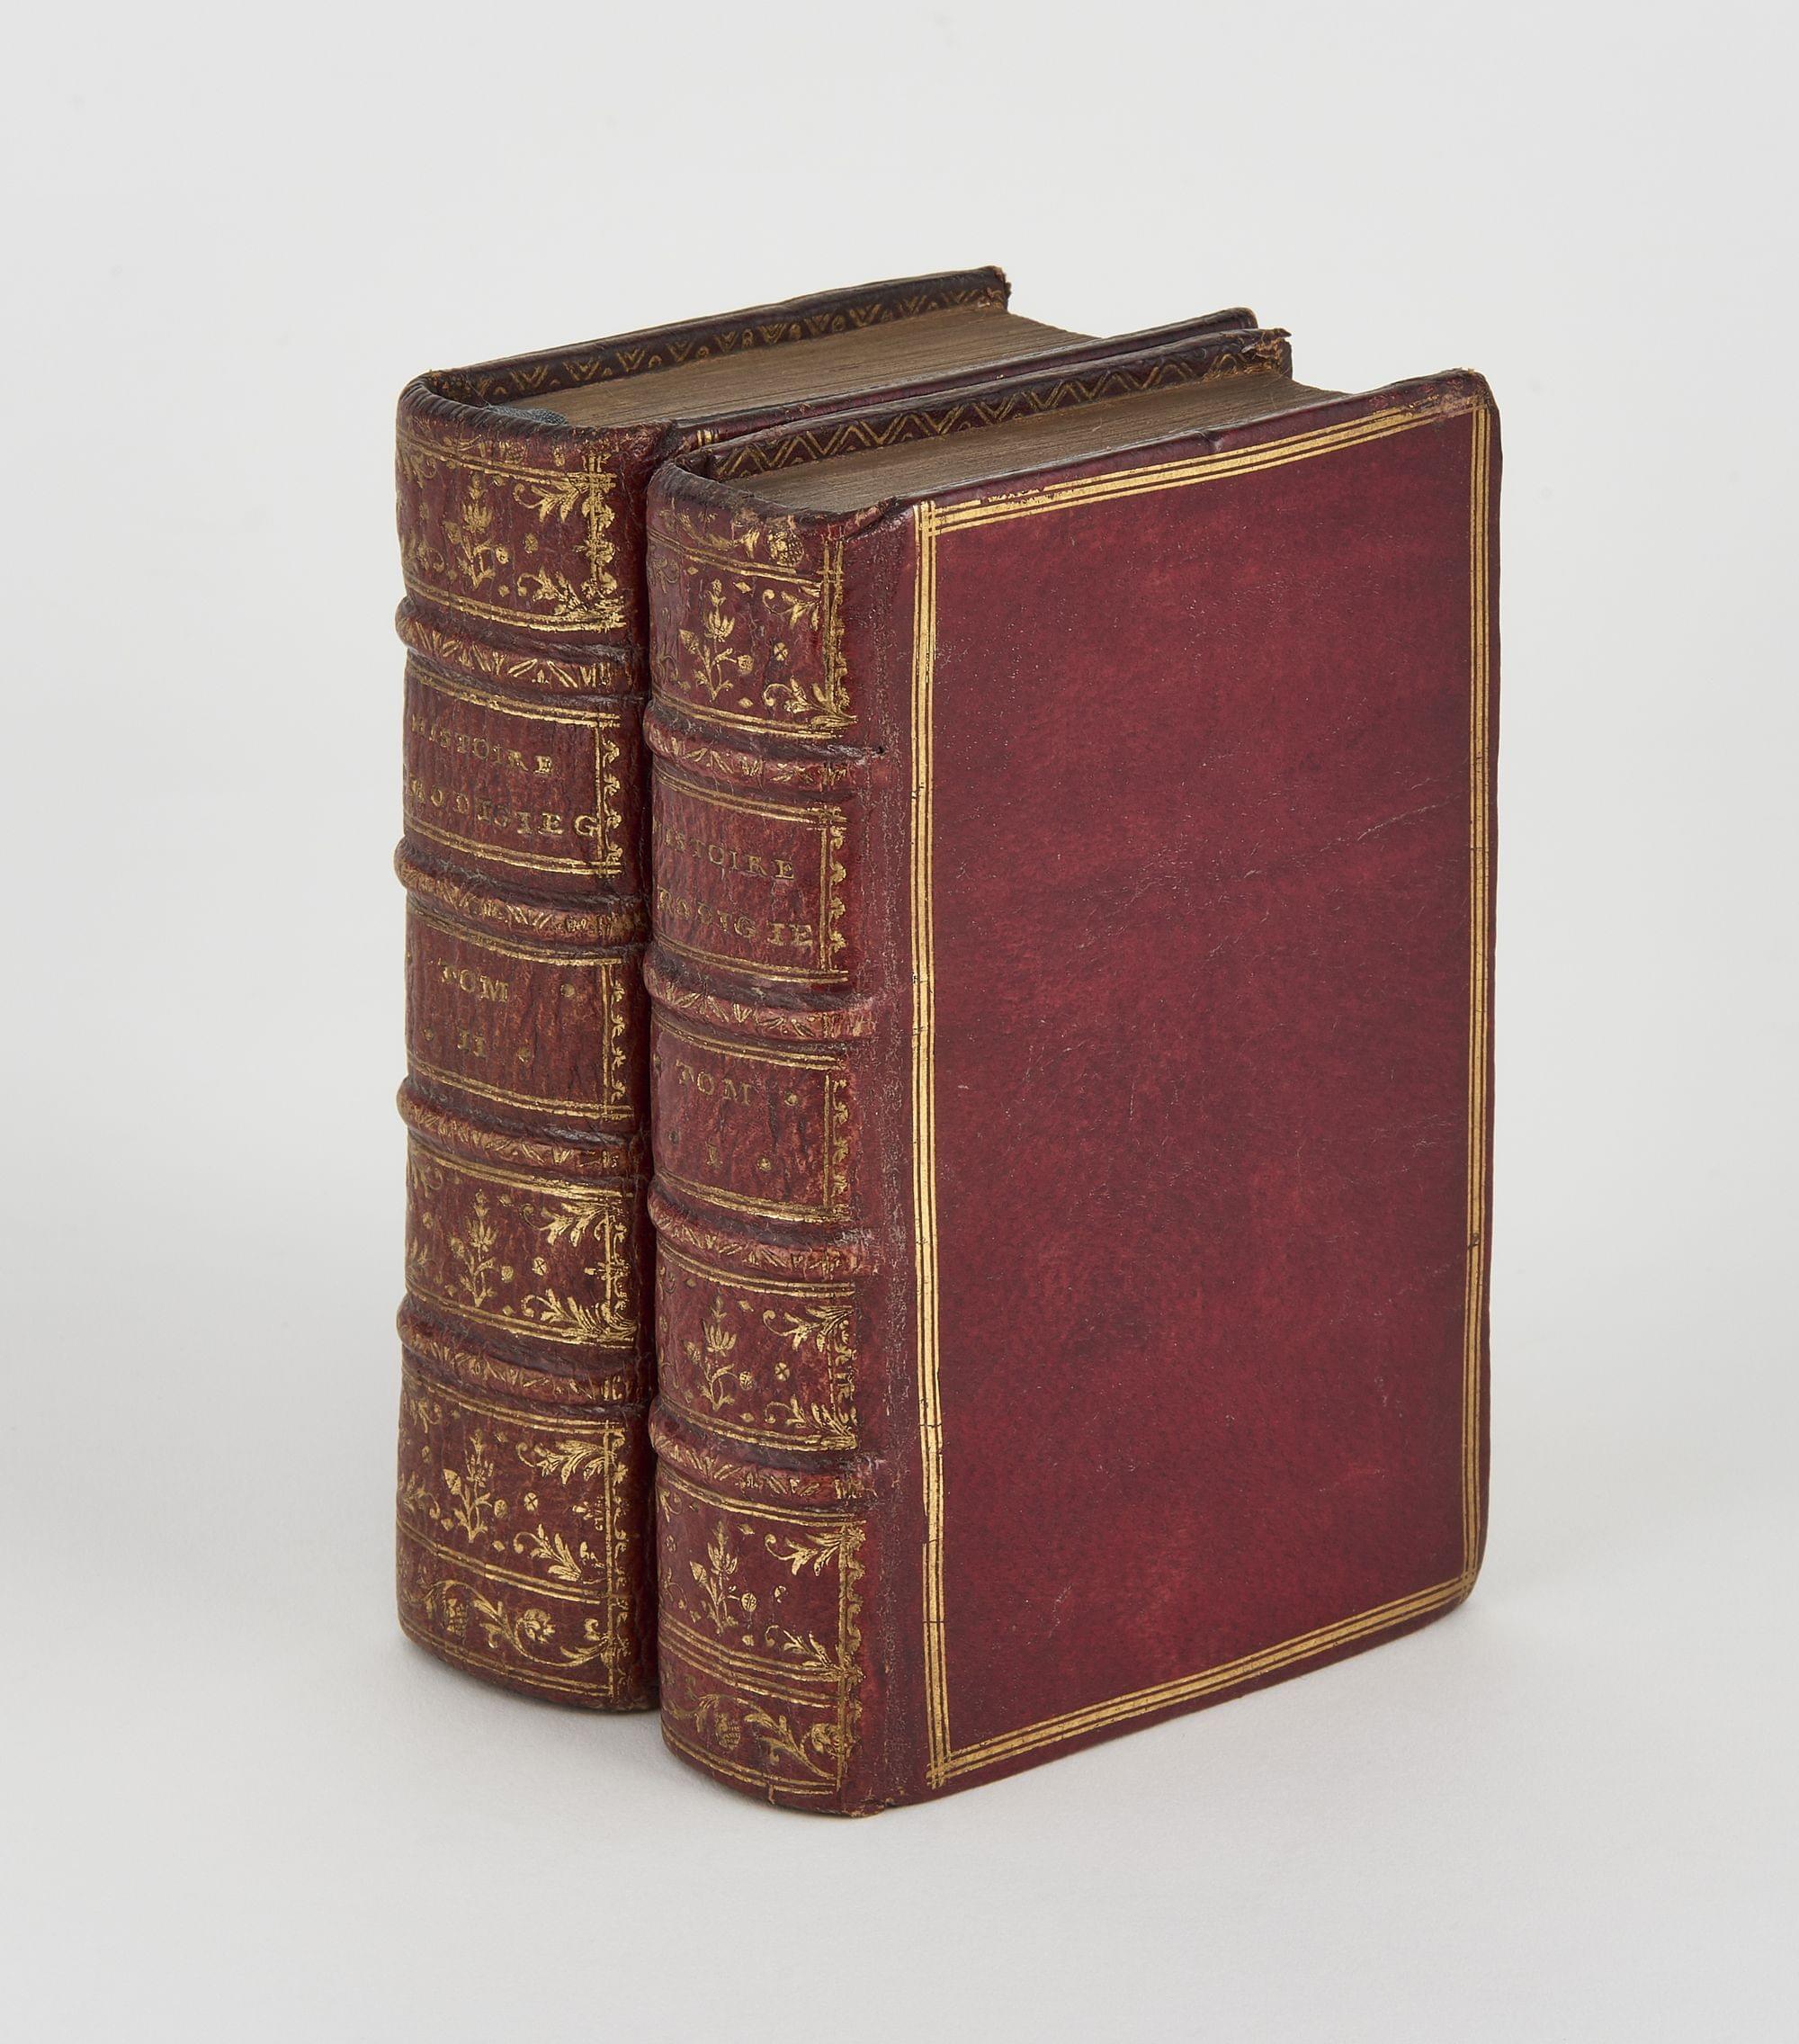 Histoires Prodigieuses. Extraictes de Plusieurs Fameux Autheurs Grecs et Latins...Paris, chez la Veuve G. Cavellat, 1597-1598;